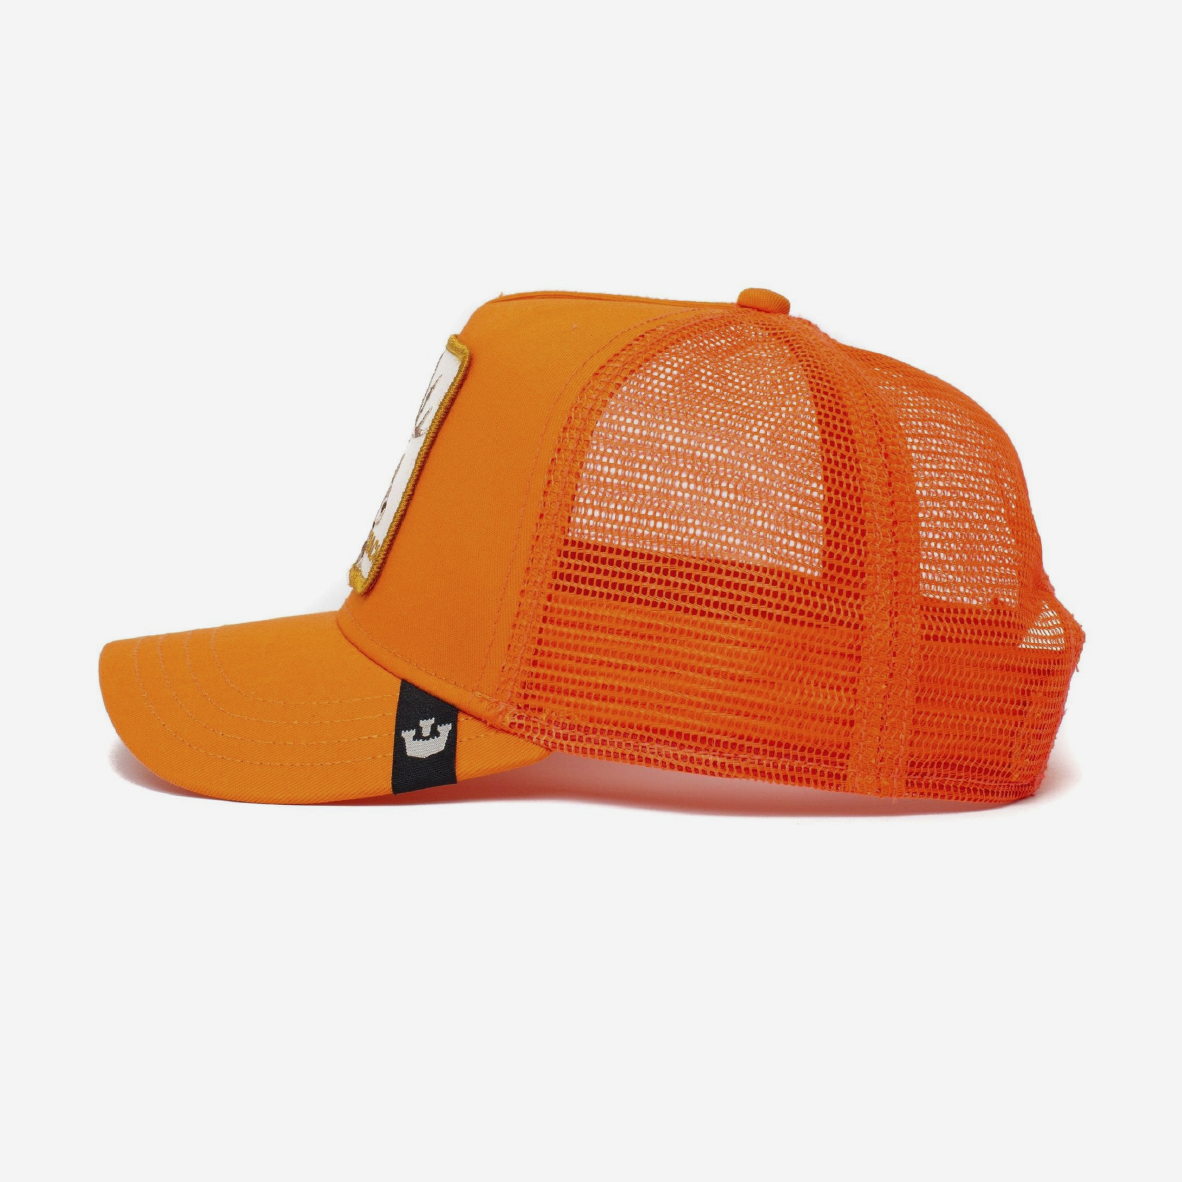 The Deer Rack Trucker - Orange